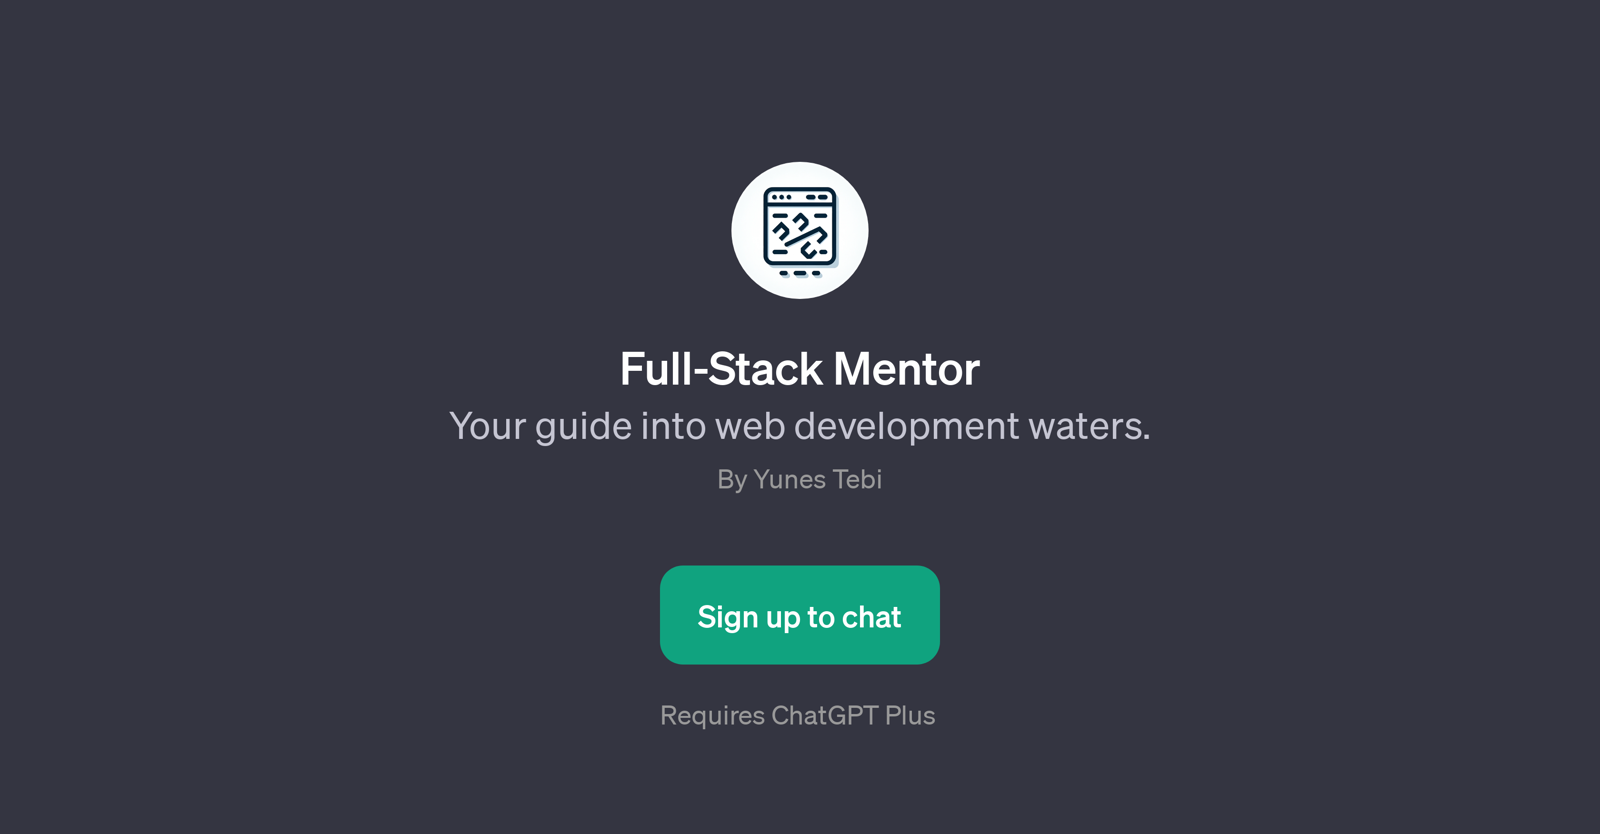 Full-Stack Mentor website